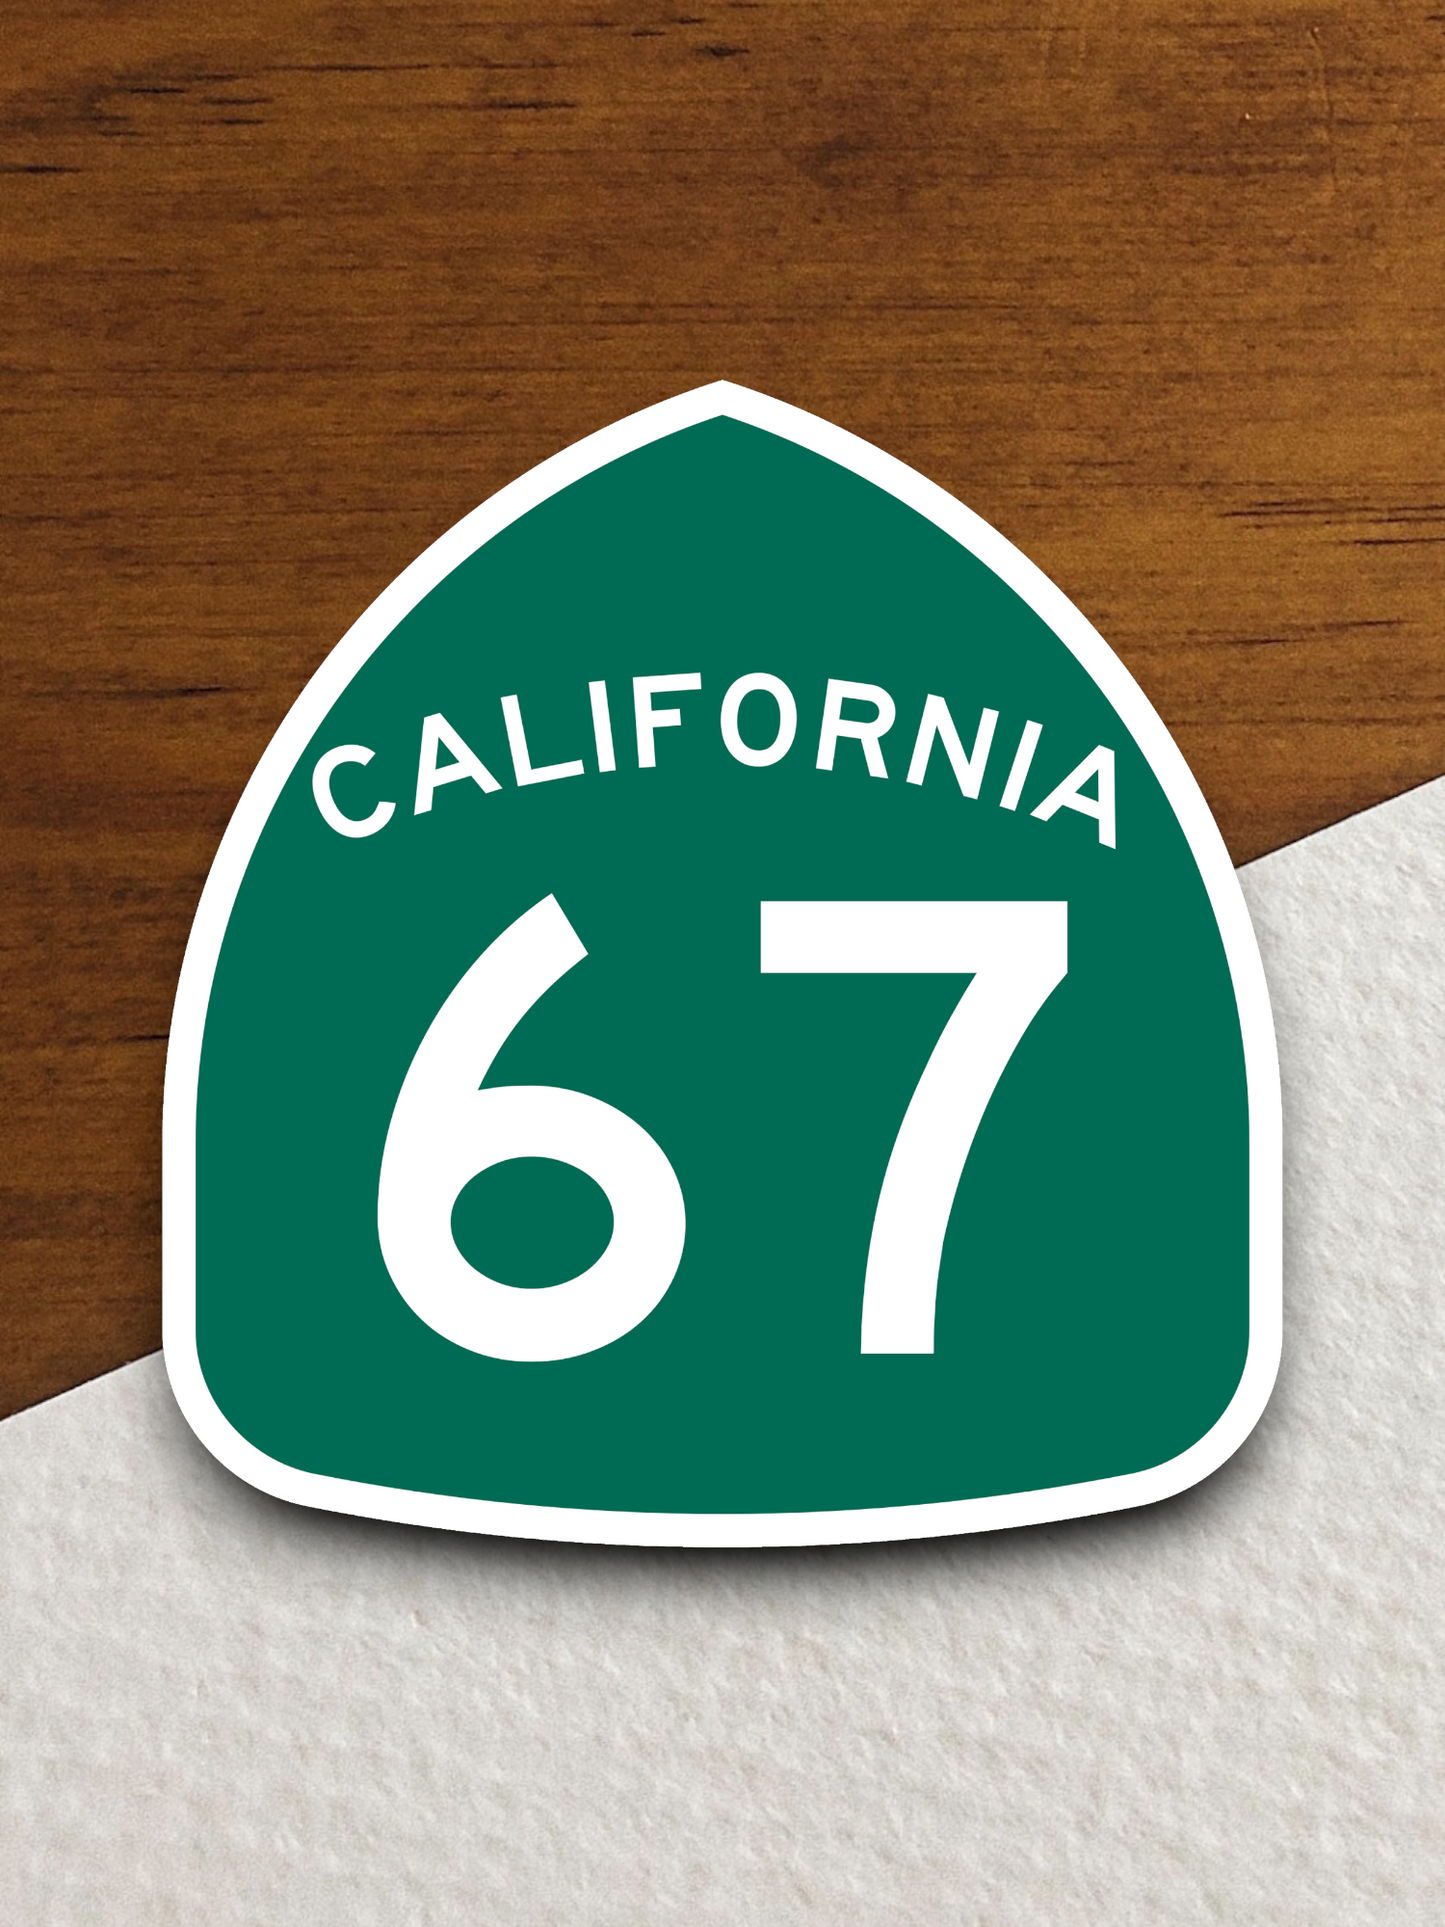 California State Route 67 Sticker